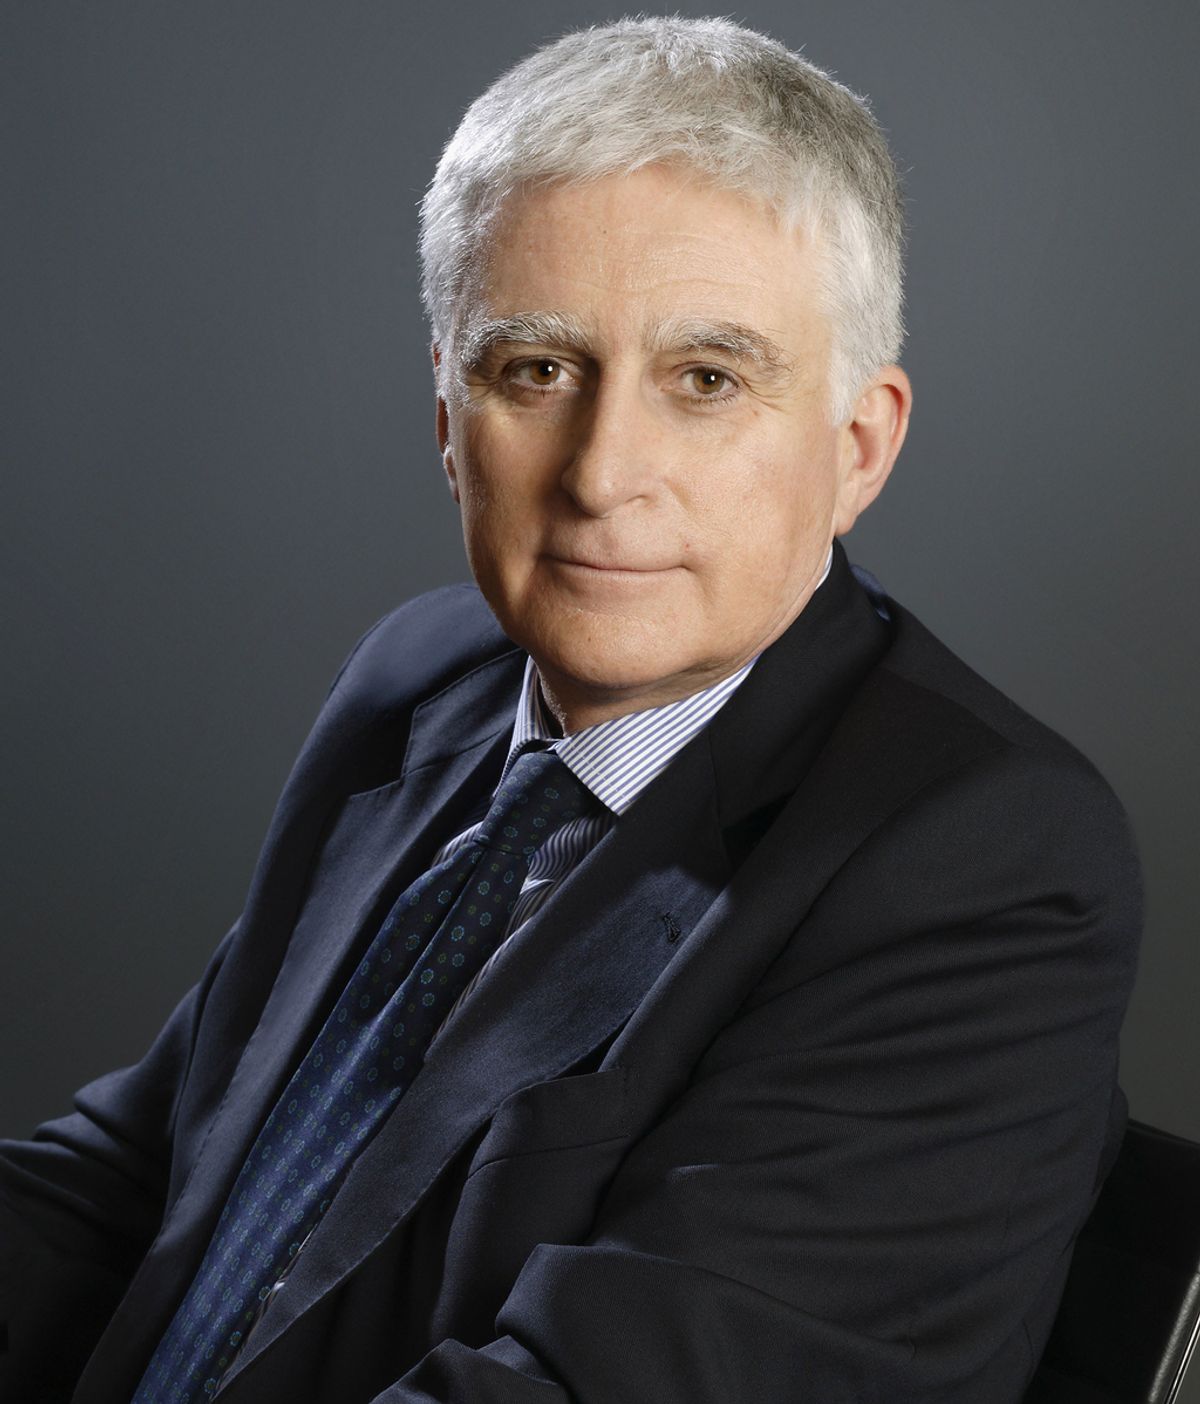 El Consejo de Administración nombra a Paolo Vasile consejero delegado único de Mediaset España